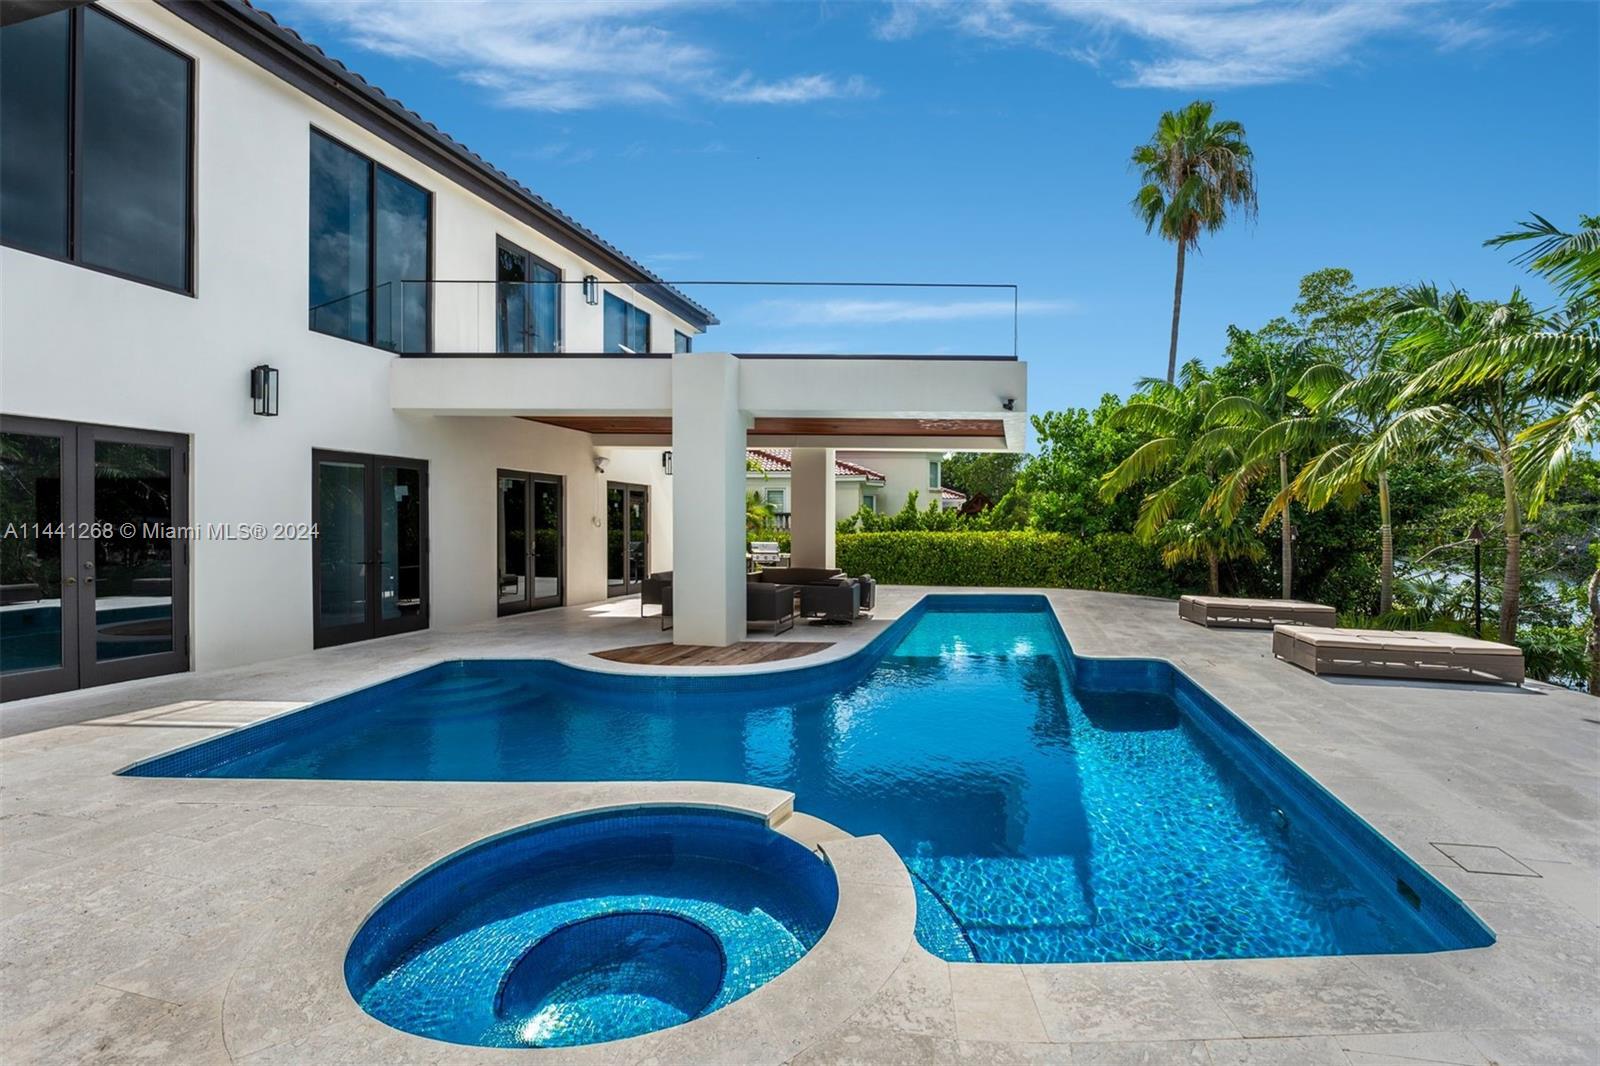 Property for Sale at 284 Las Brisas Ct Ct, Coral Gables, Broward County, Florida - Bedrooms: 5 
Bathrooms: 5  - $13,900,000